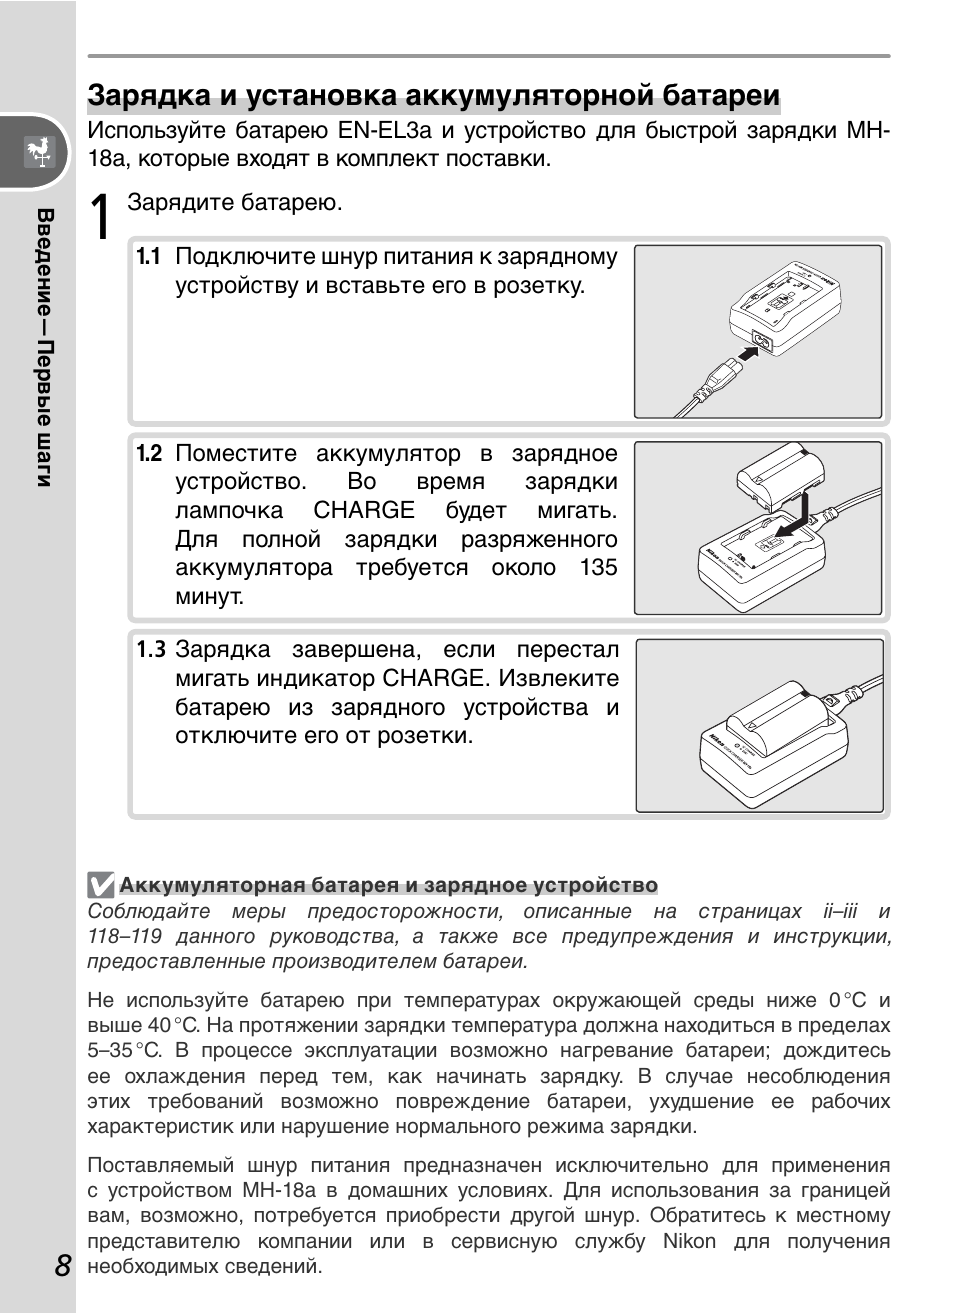 Инструкция по эксплуатации Nikon D50 | Страница 18 / 148